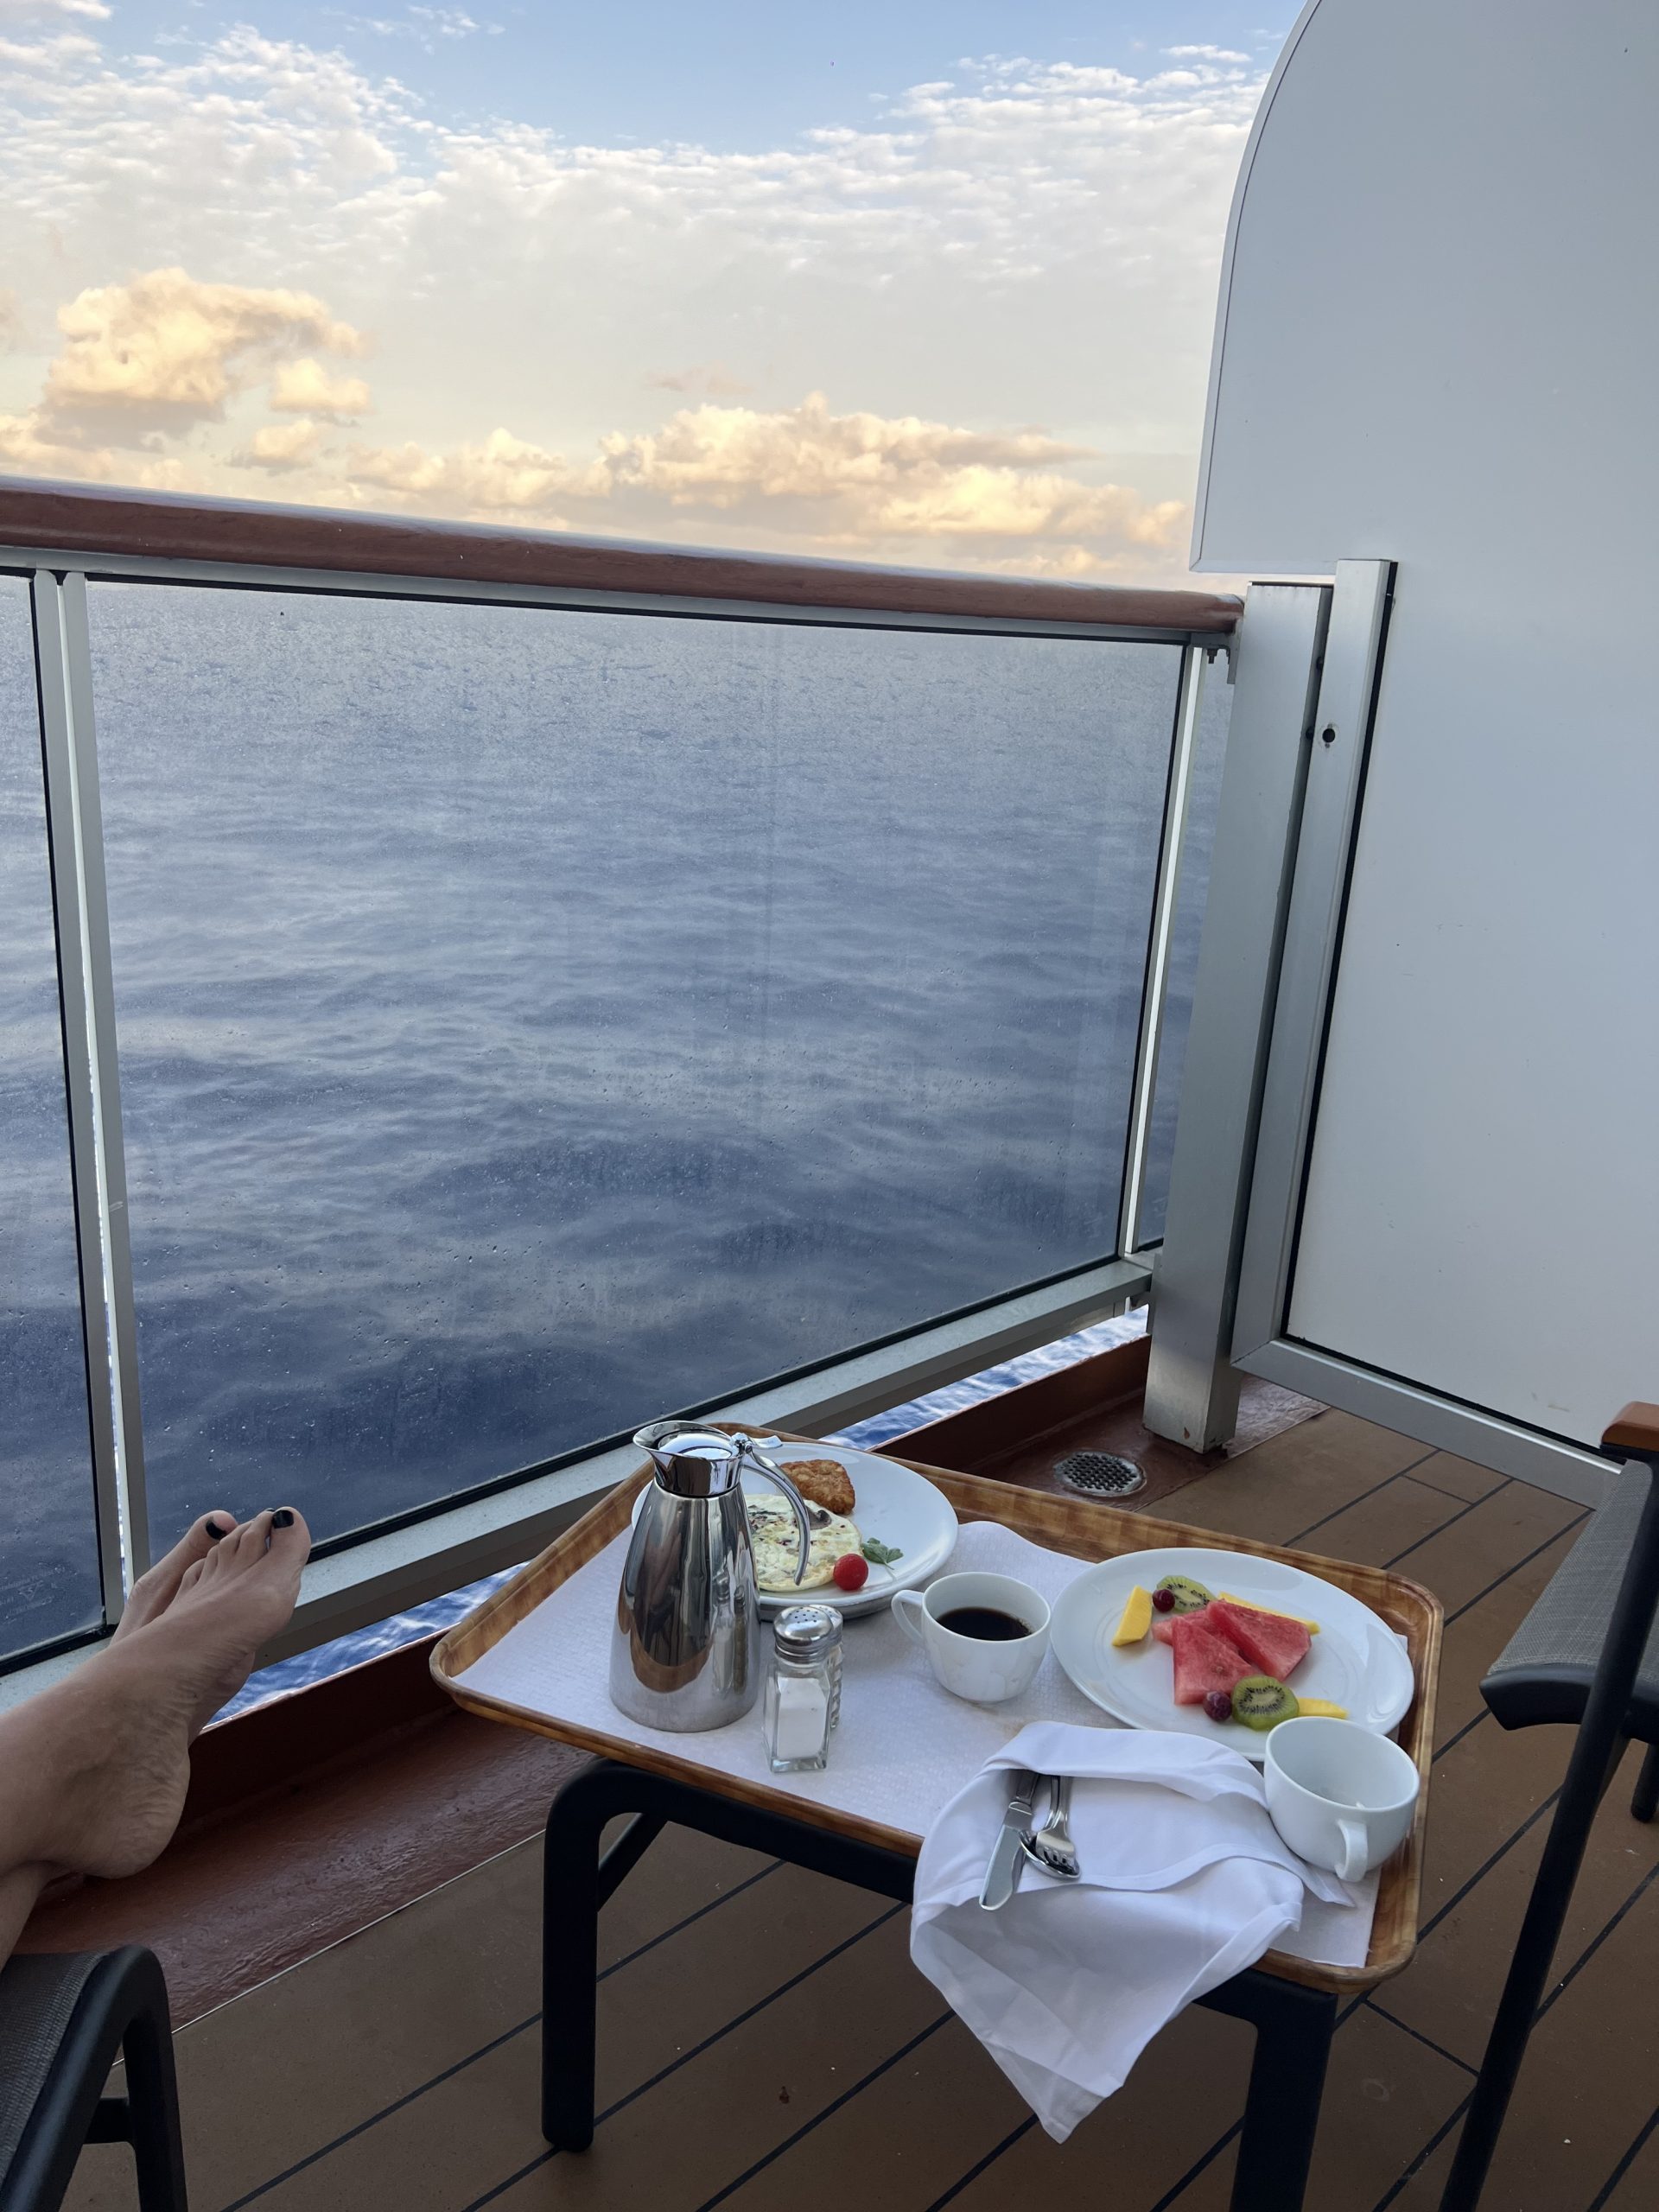 Roomservice! Hoe luxe is dat, ontbijten op je balkonnetje en wachten op de zonsopkomst?